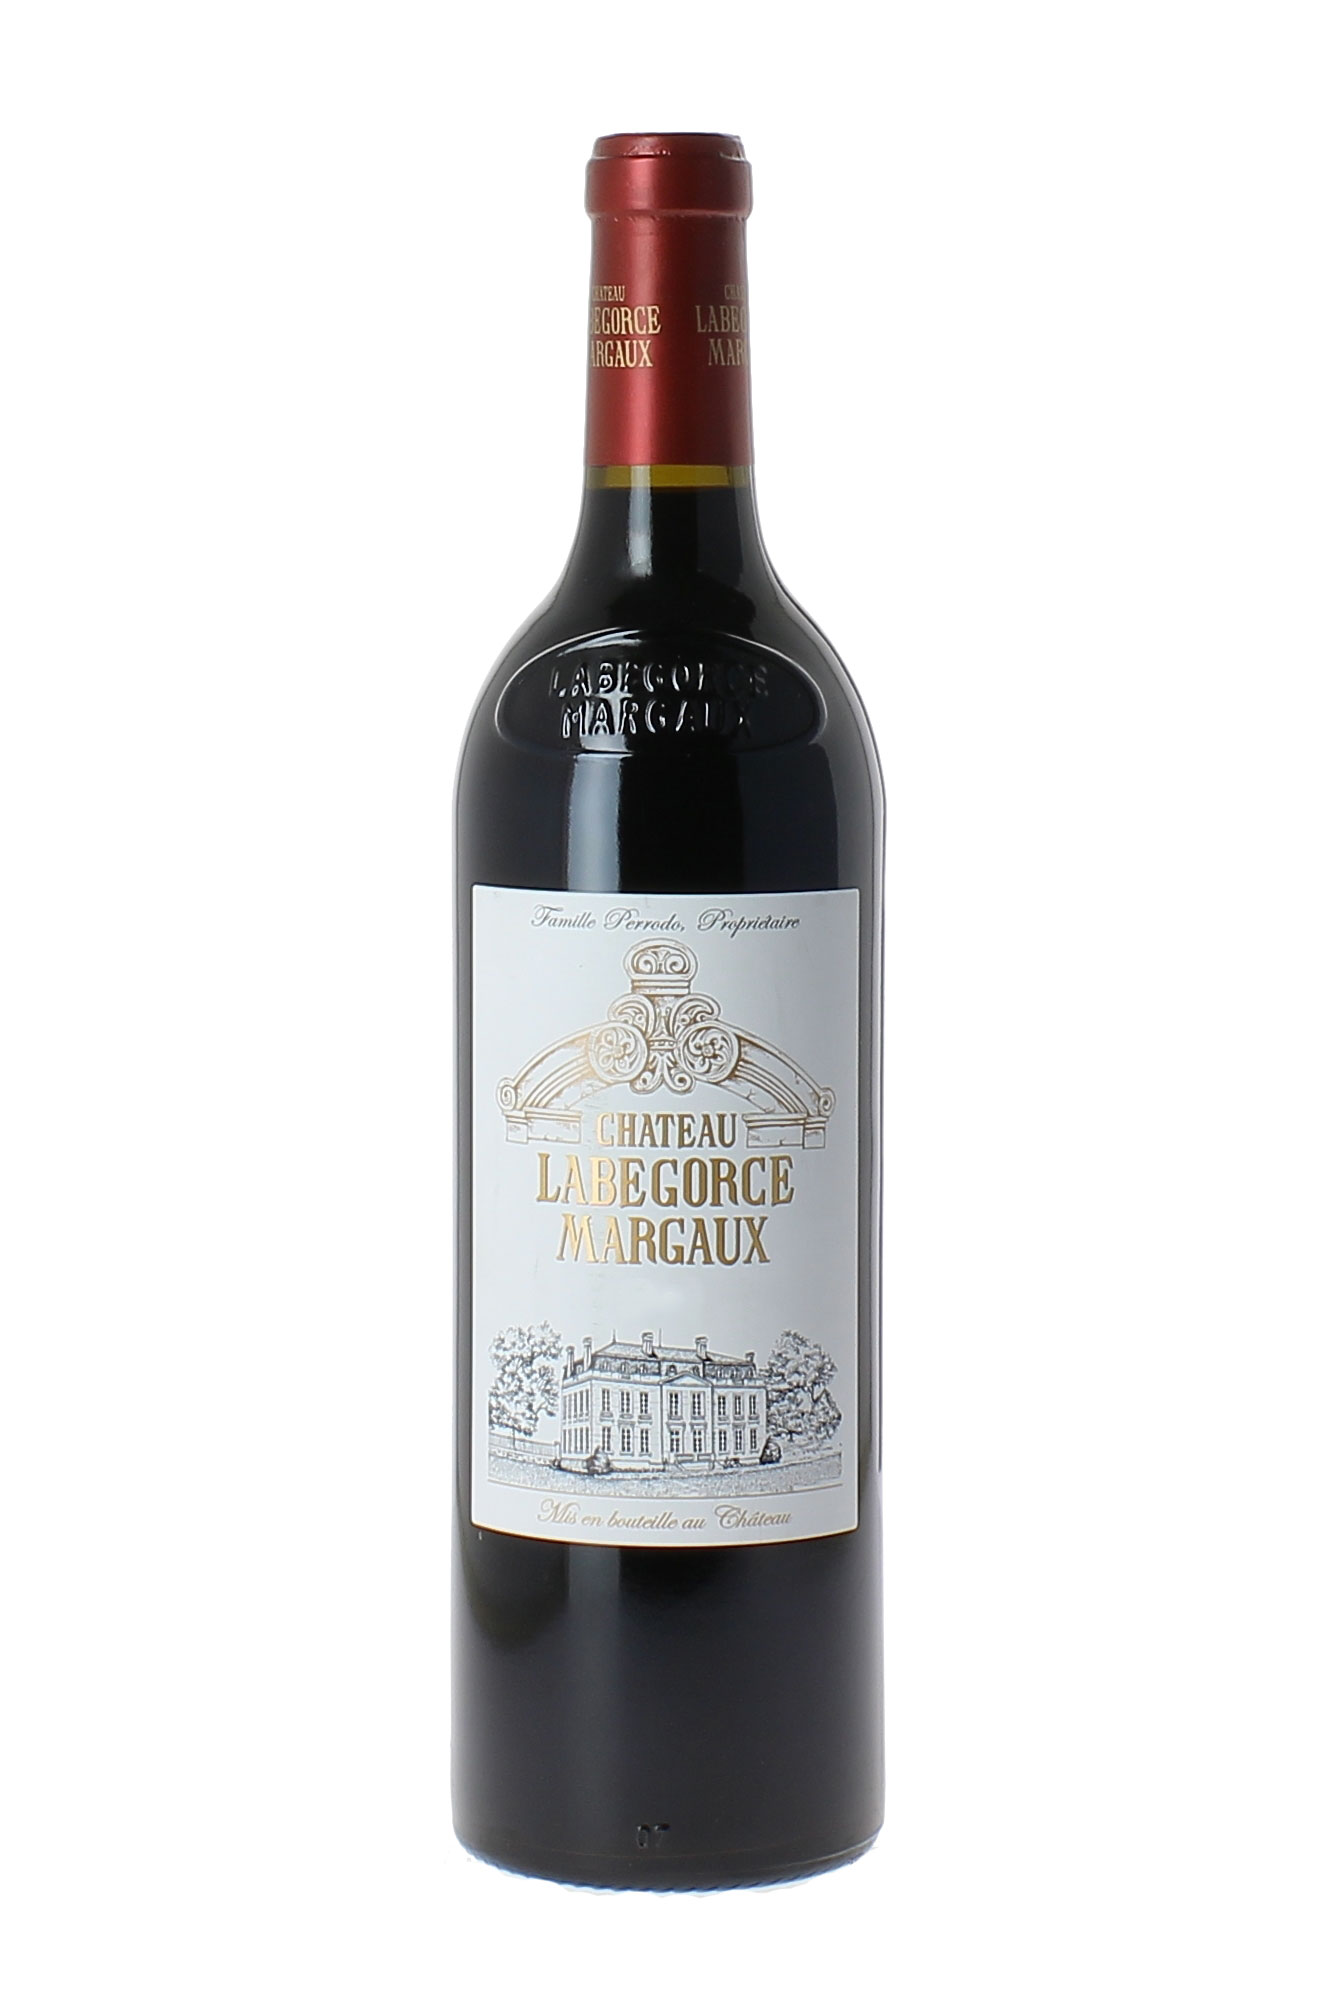 Labgorce 2014  Margaux, Bordeaux rouge